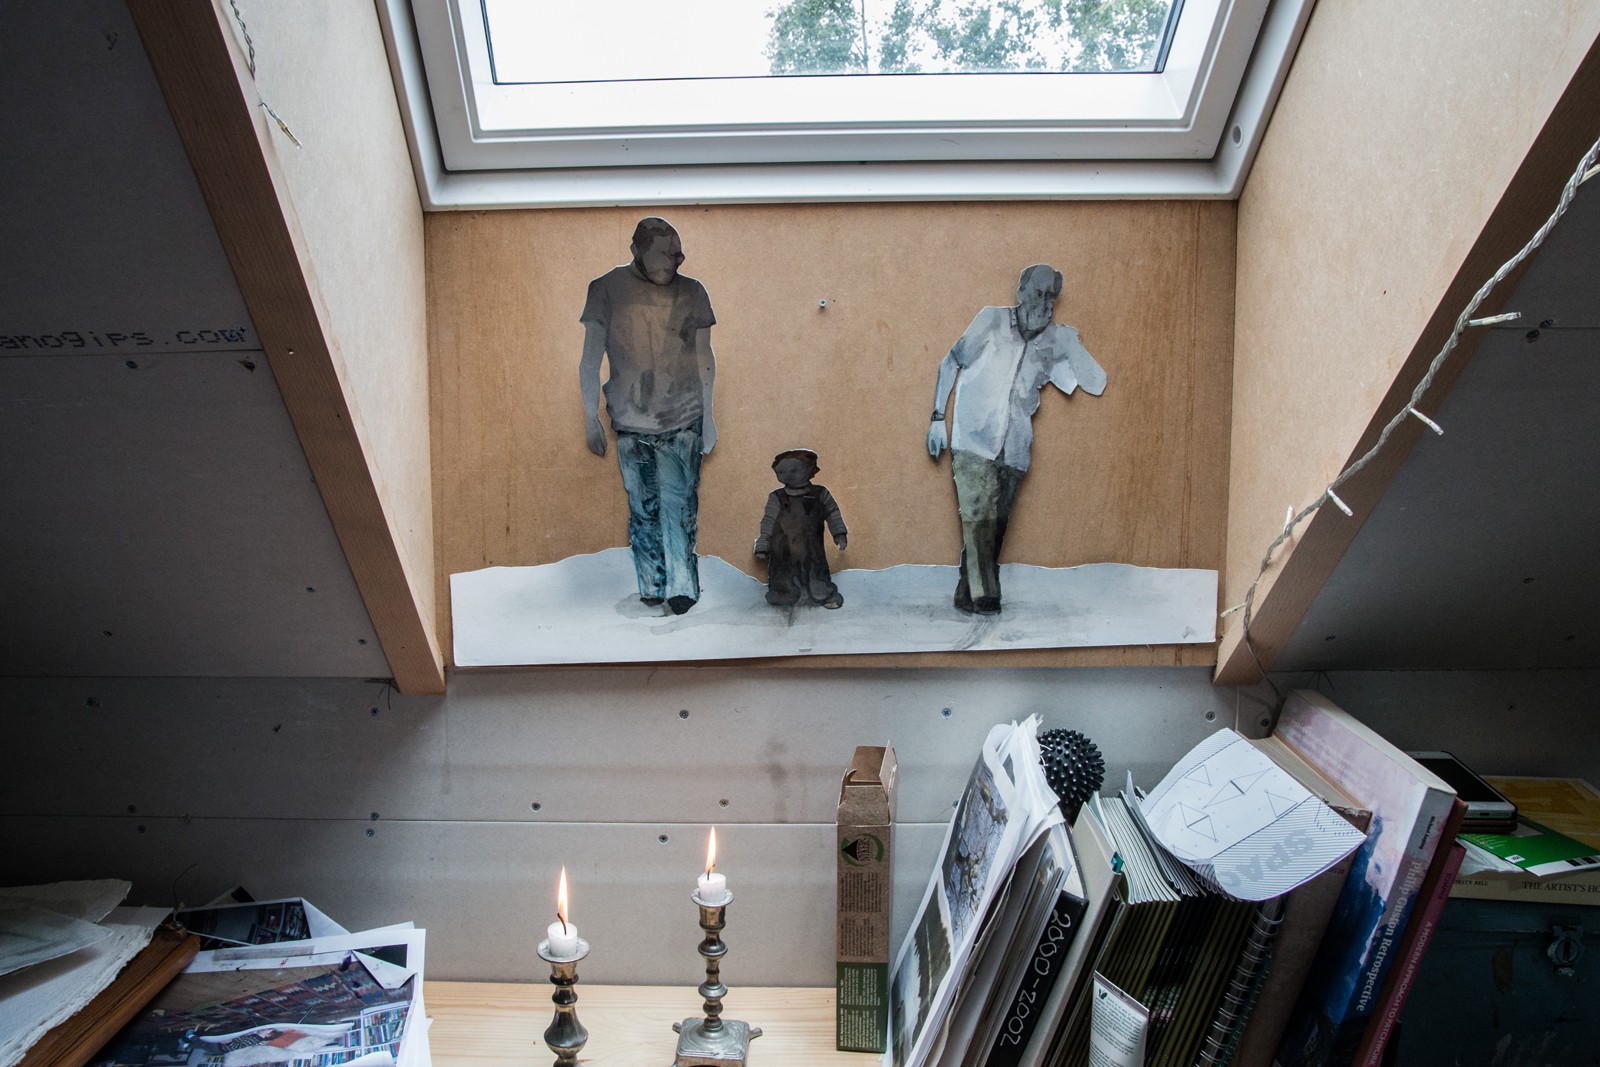 På besøg i billedkunstner Luise Faurholts værksted</br>Luise Faurholts mand og den ene af hende sønner har stået model til figurerne i vinduet. </br>Foto: Mariana Gil